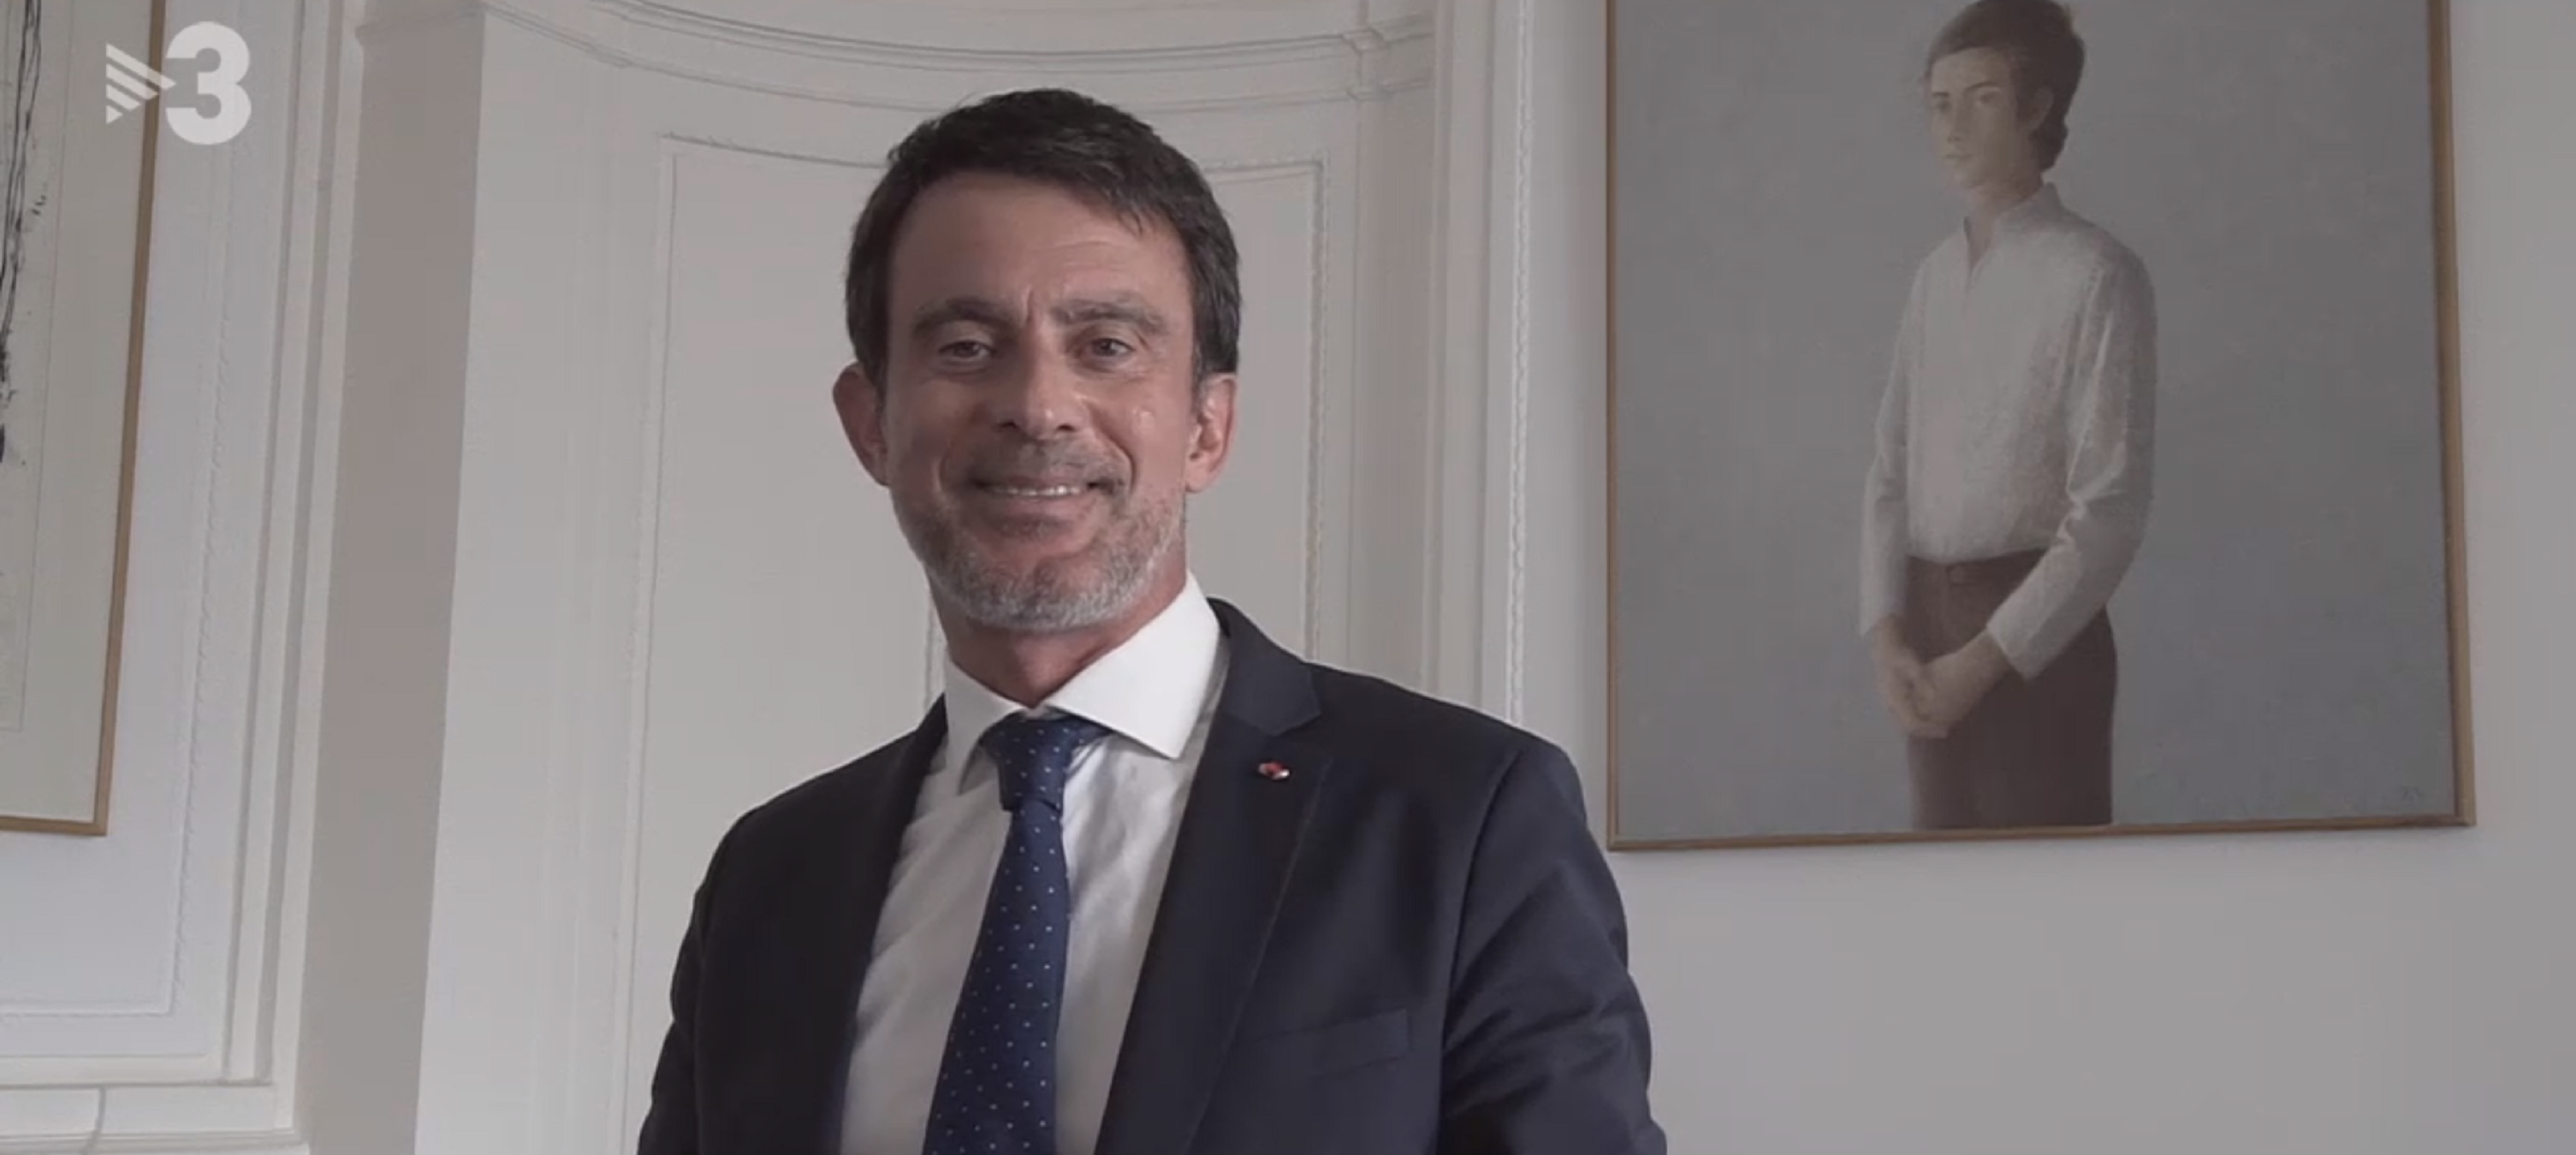 Manuel Valls hunde a TV3 a un 11,8% y queda sexto del día